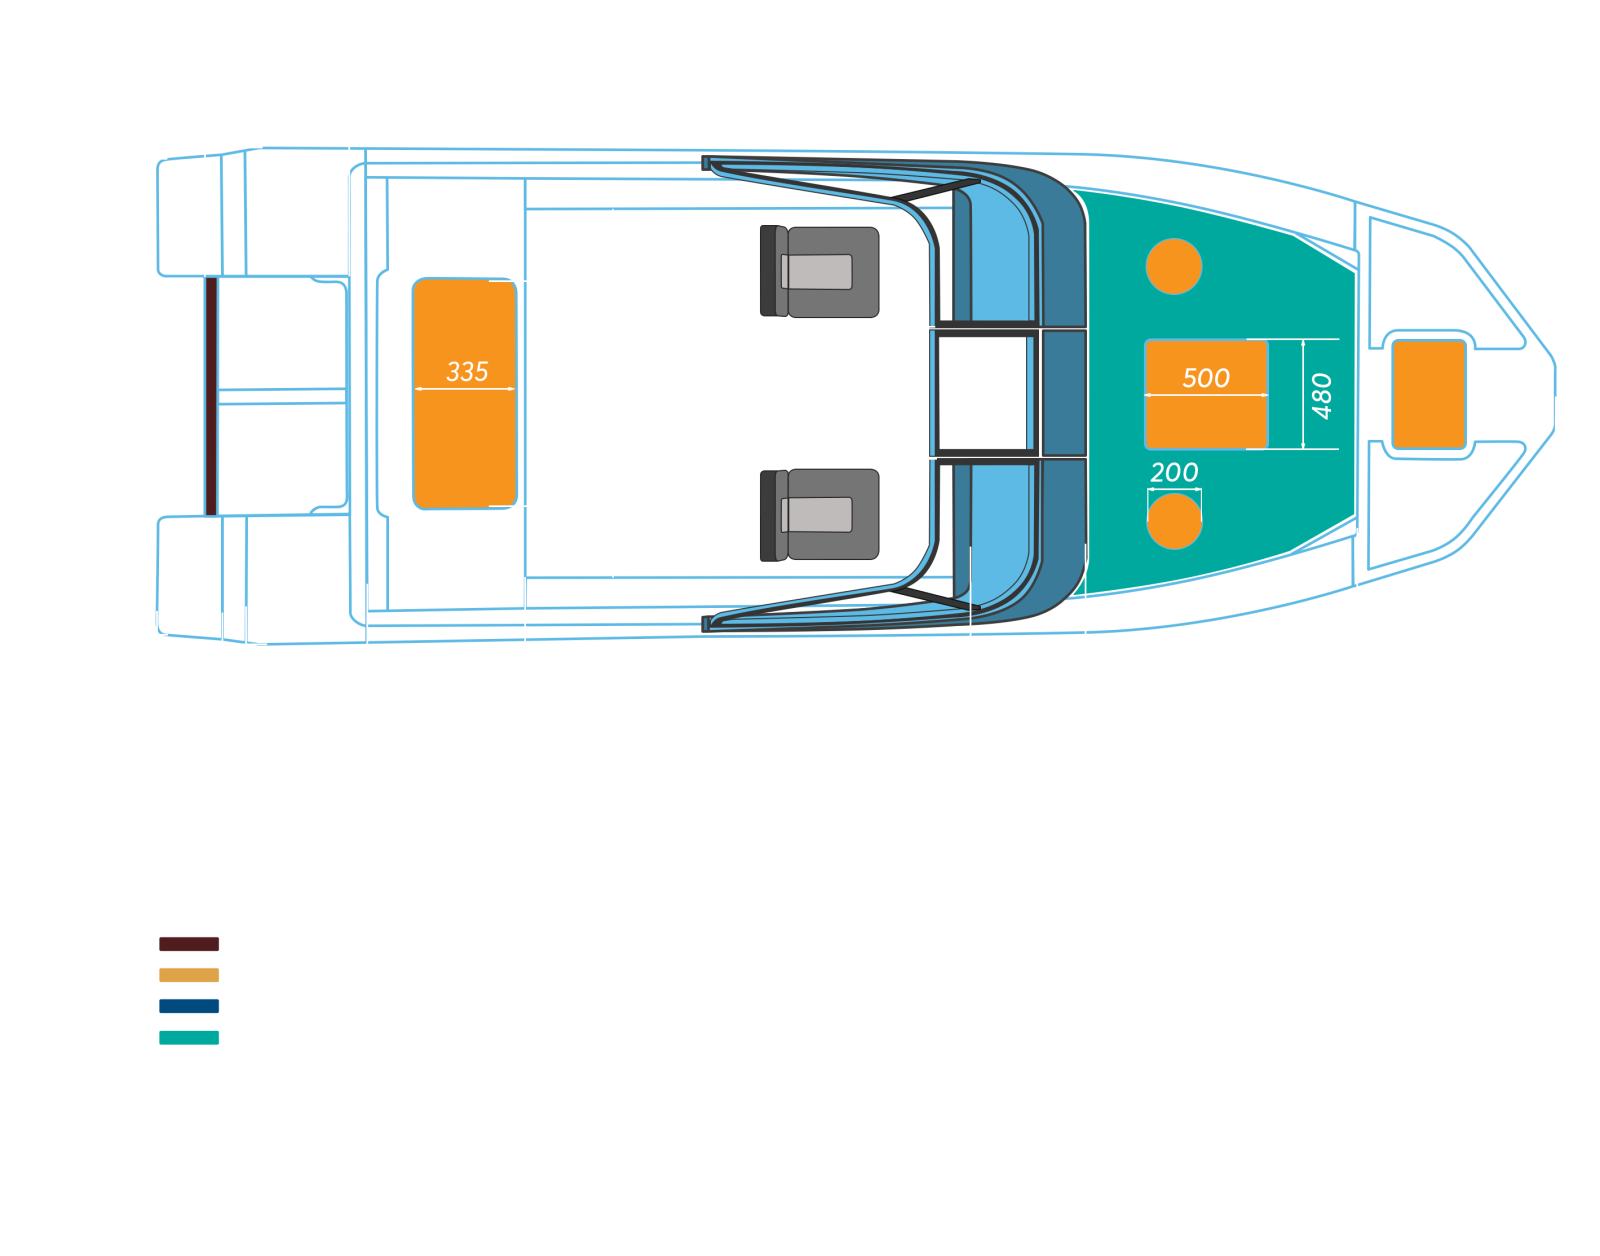 Swimmer 490